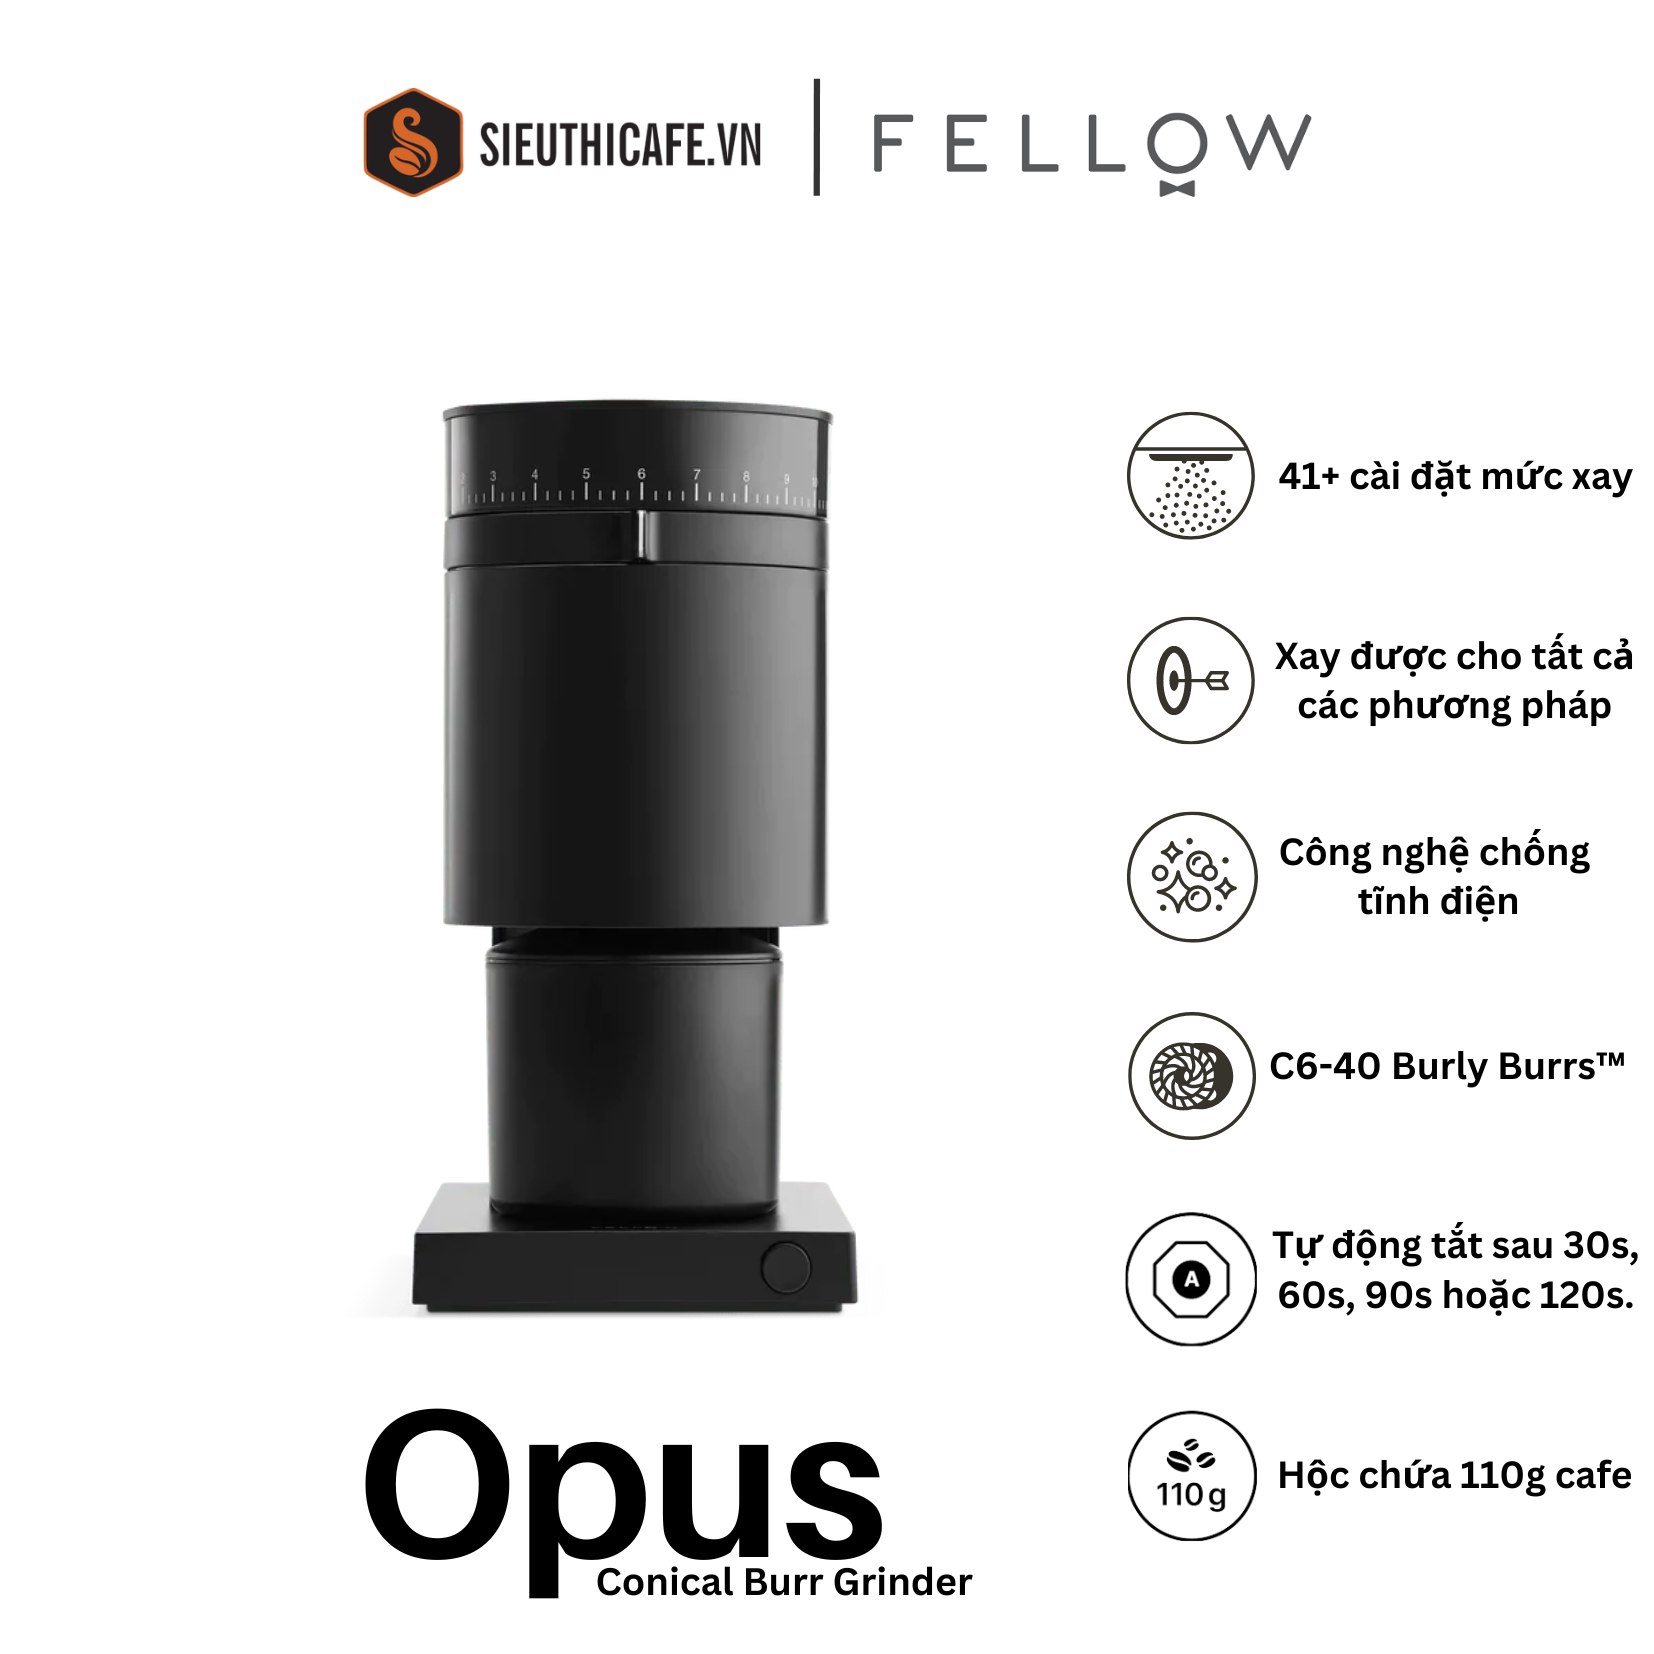 Máy xay cà phê Fellow Opus lưỡi hình nón - Xay Esppresso đến Cold brew - Màu Đen - Bảo hành 2 năm [ Hàng Chính Hãng ]